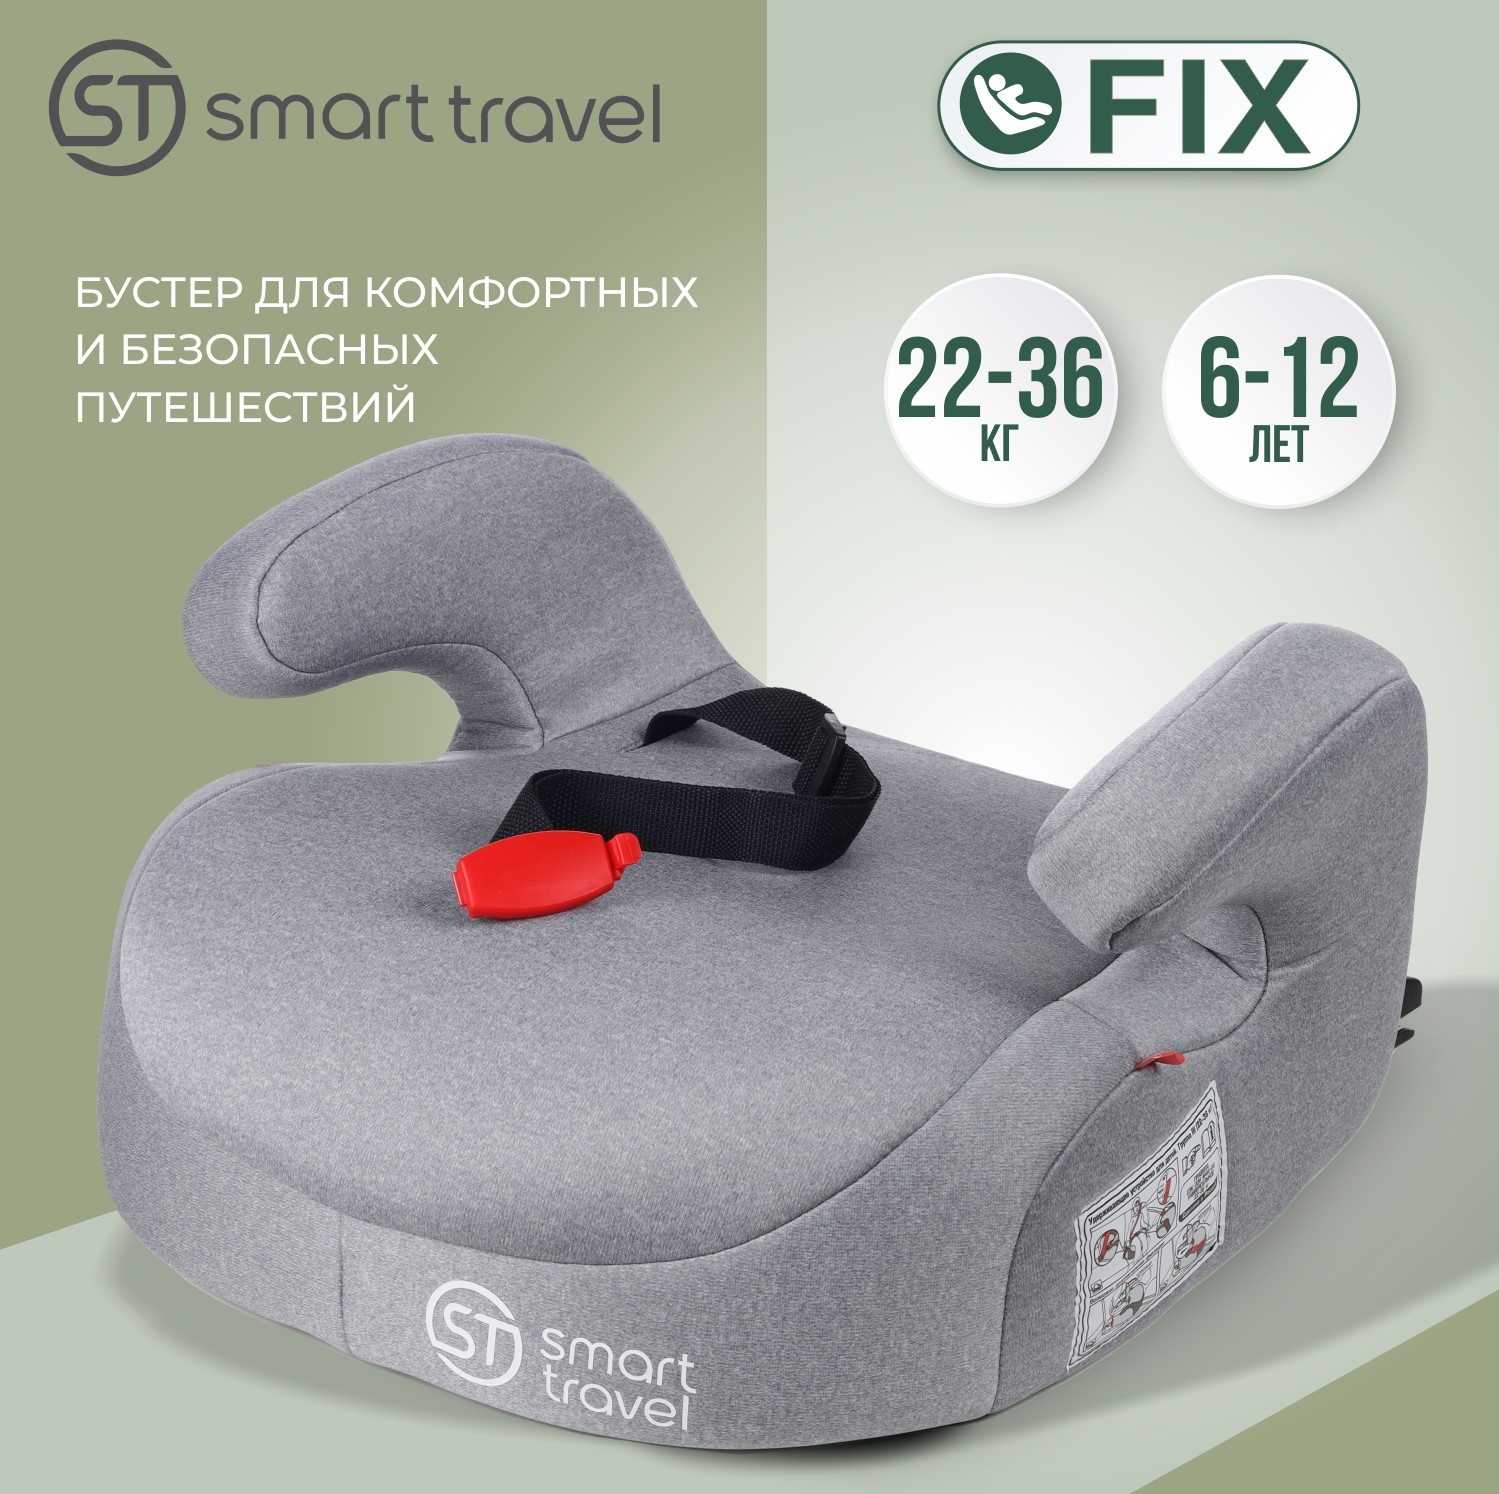 Детское автокресло Smart Travel Trast FIX, группа 3, 6-12 лет, 22-36 кг, light grey